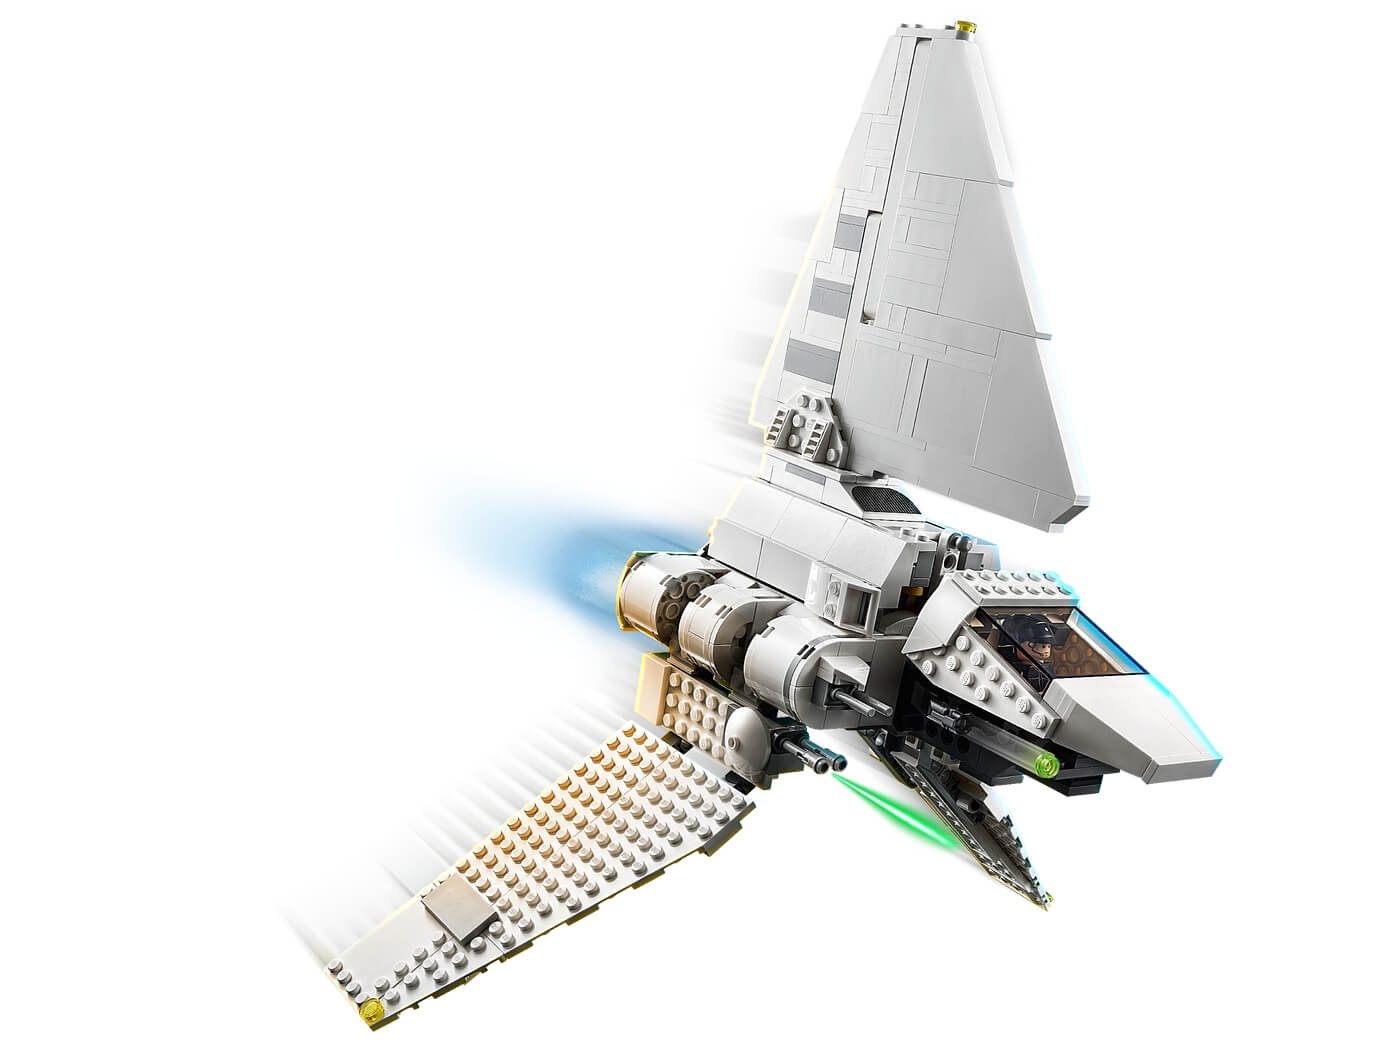 Lanzadera Imperial ( Lego 75302 ) imagen b